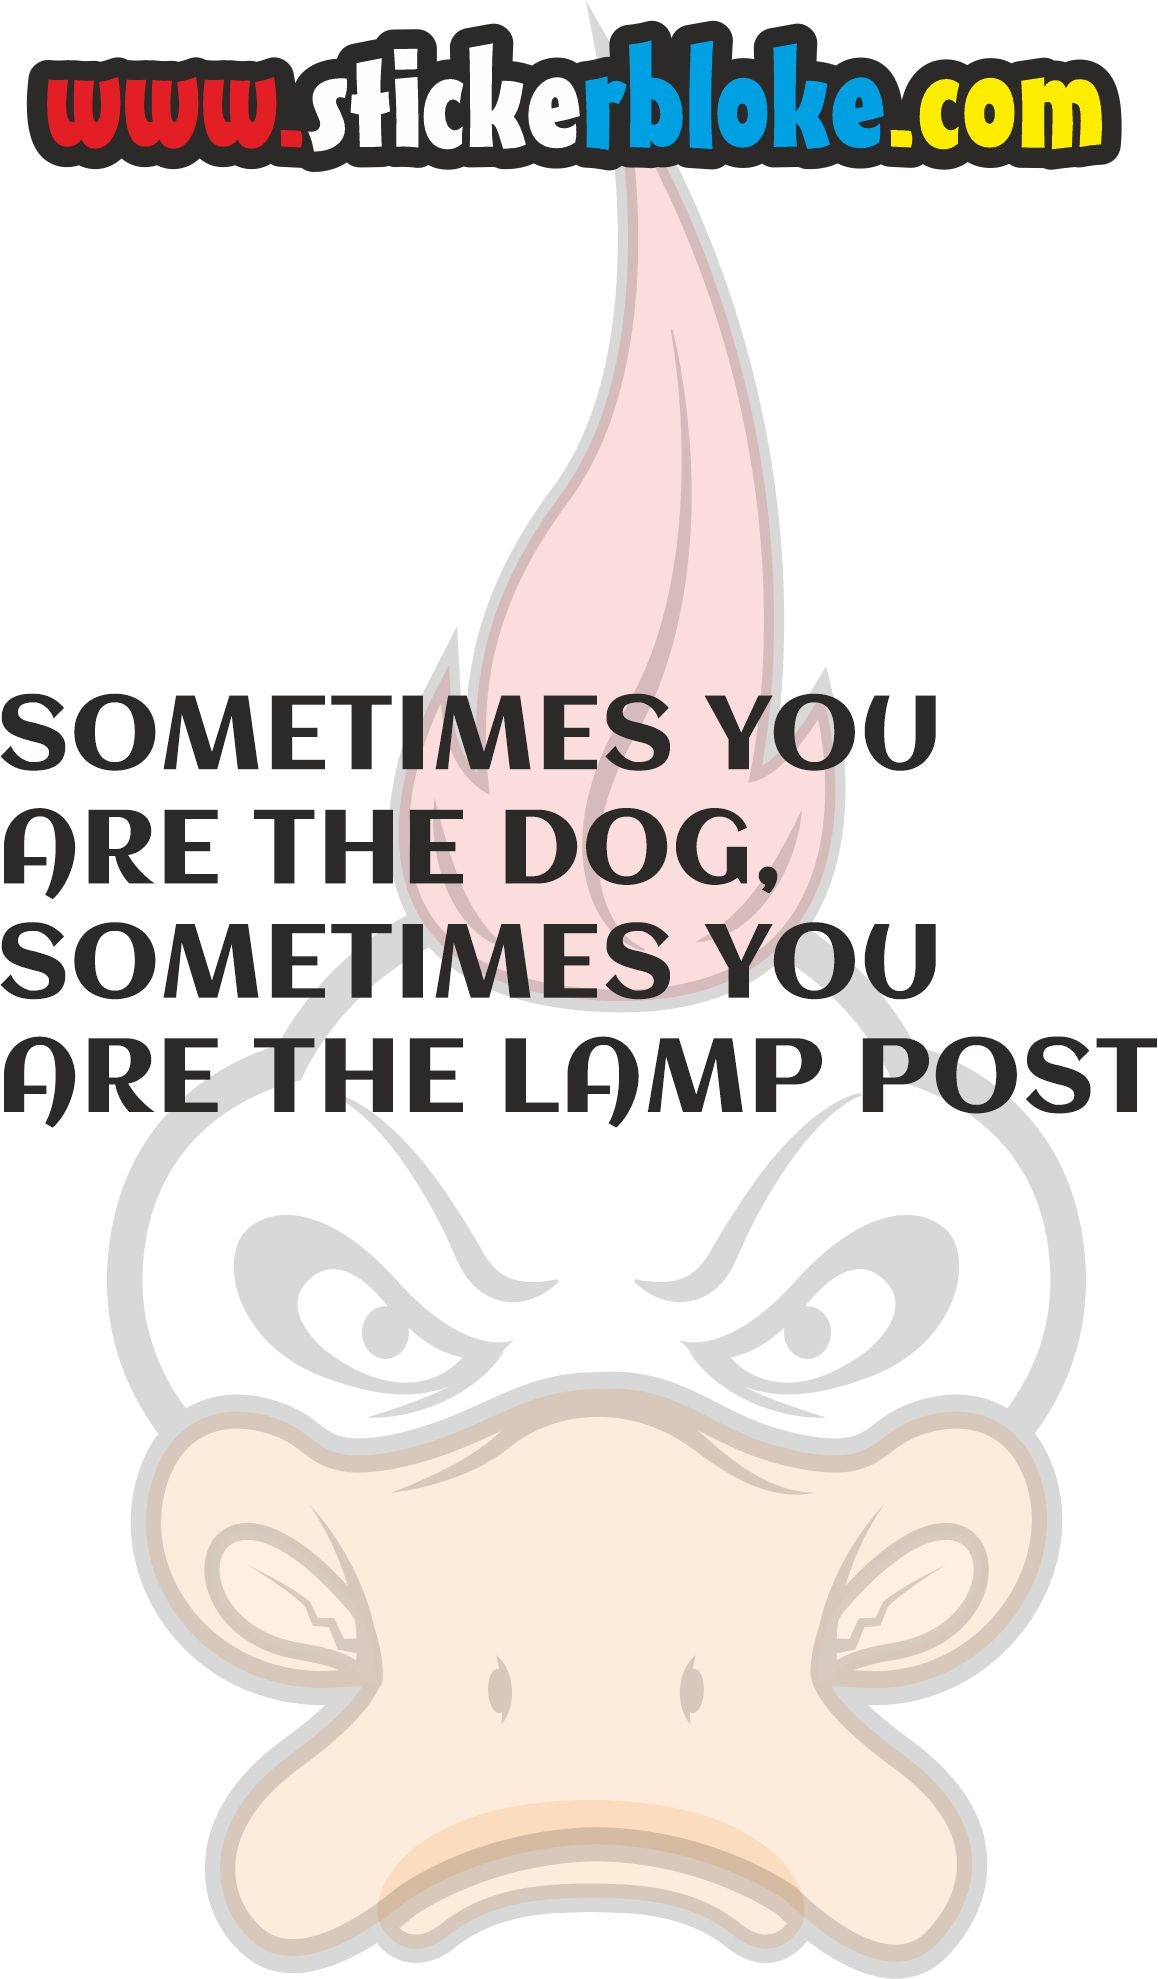 SOMETIMES YOU ARE THE DOG SOMETIMES YOU ARE THE LAMPOST